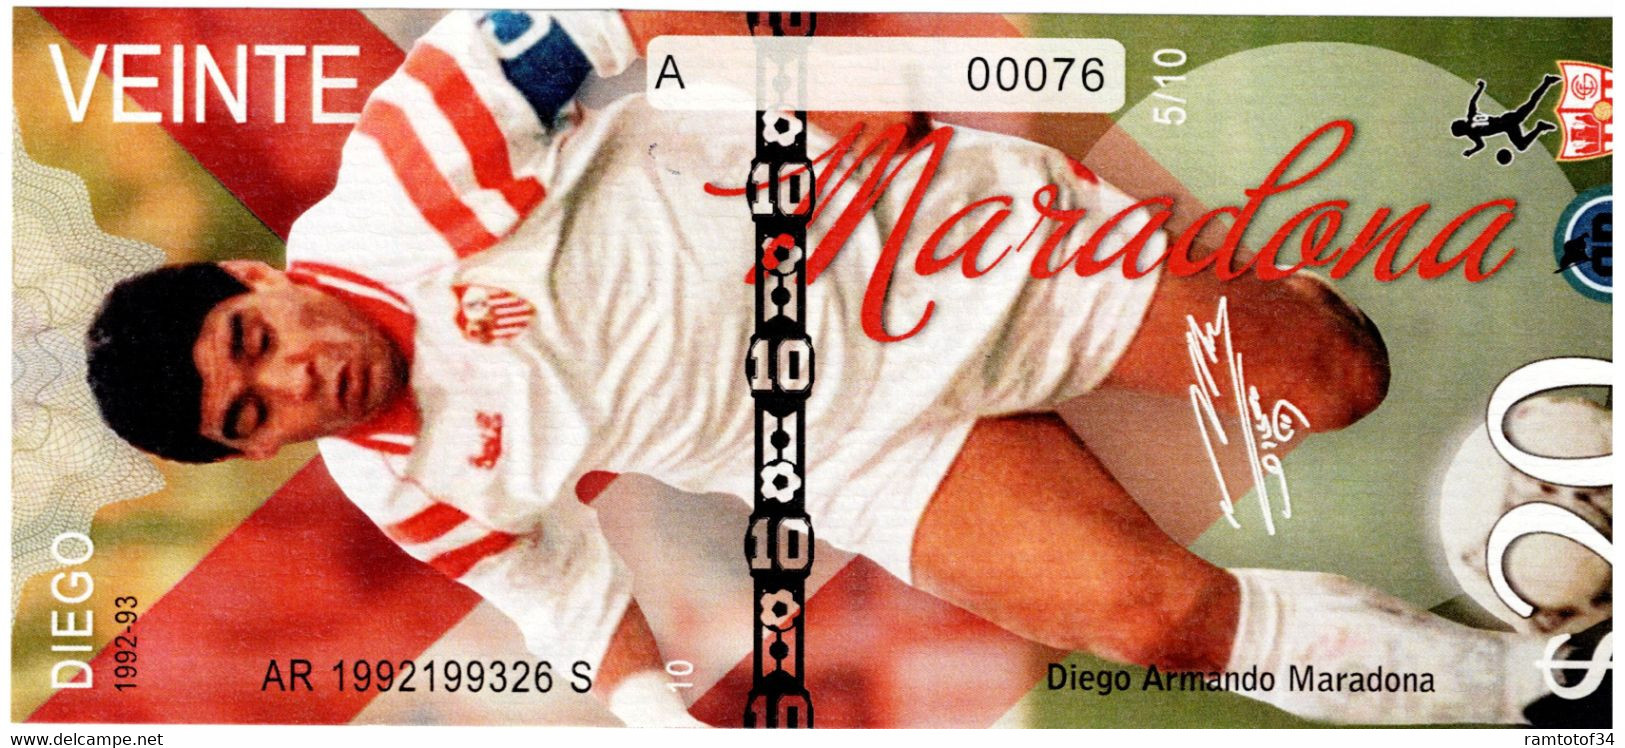 Diego MARADONA - Set de 10 billets diegos 1976-2020 UNC 2022